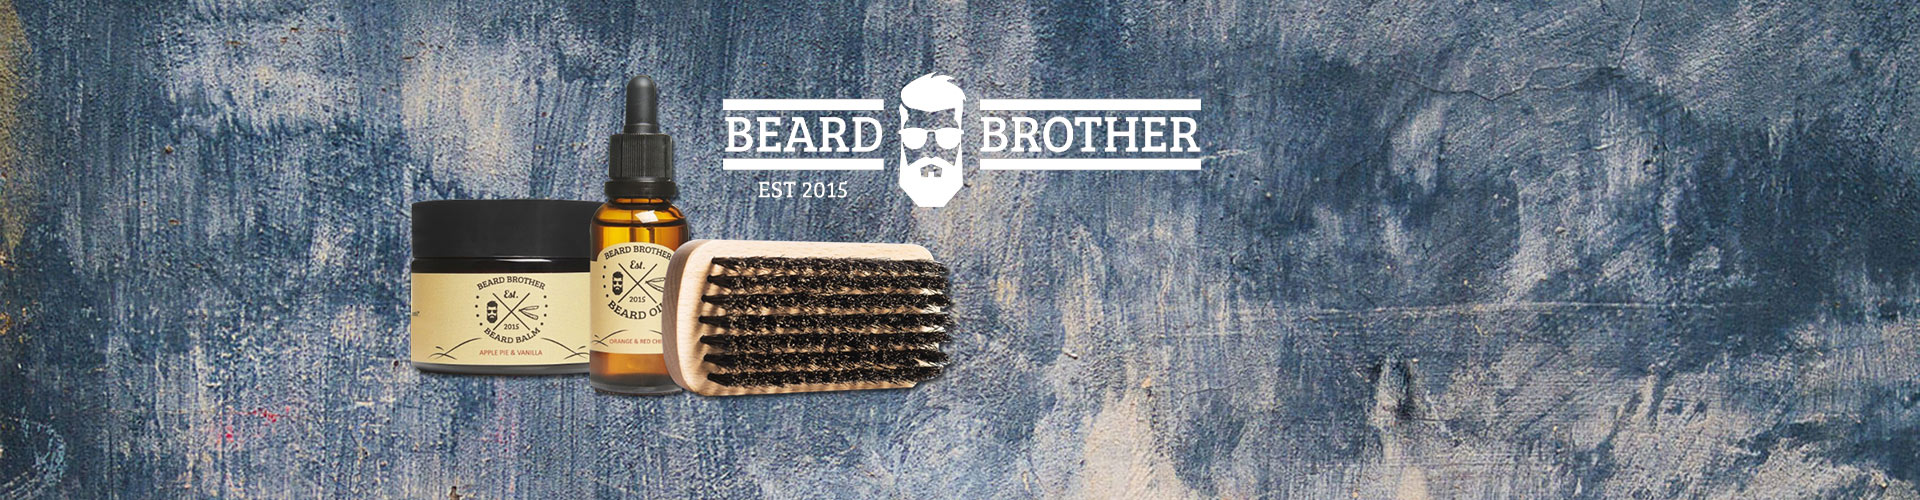 Découvrez les produits de la marque Beard Brother sur Art du barbier